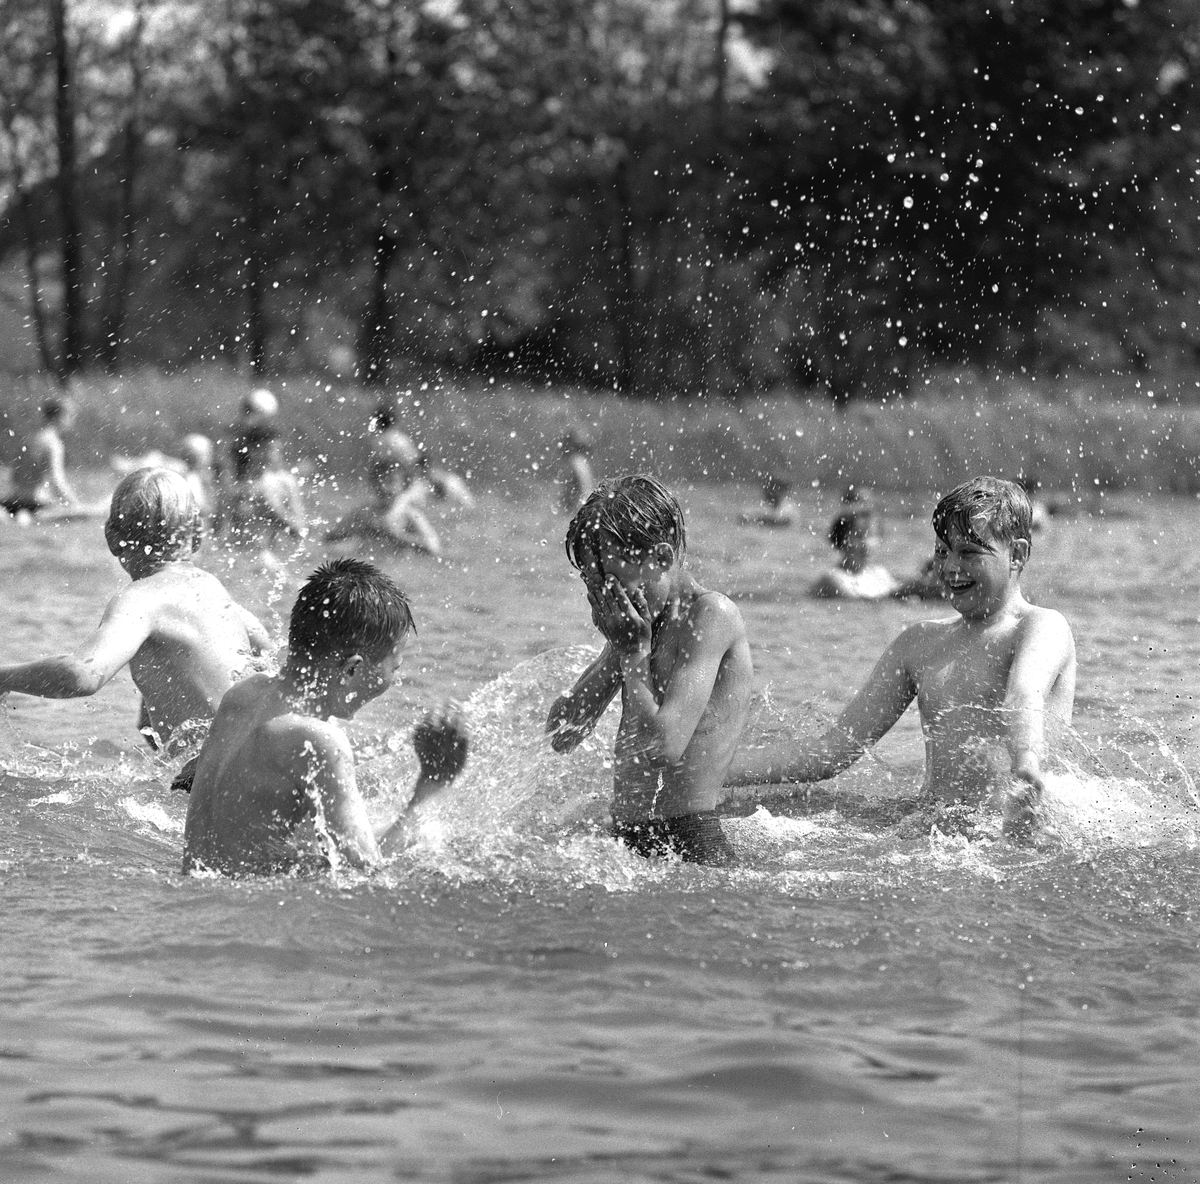 Gustavsviks simskola.
17 juni 1958.